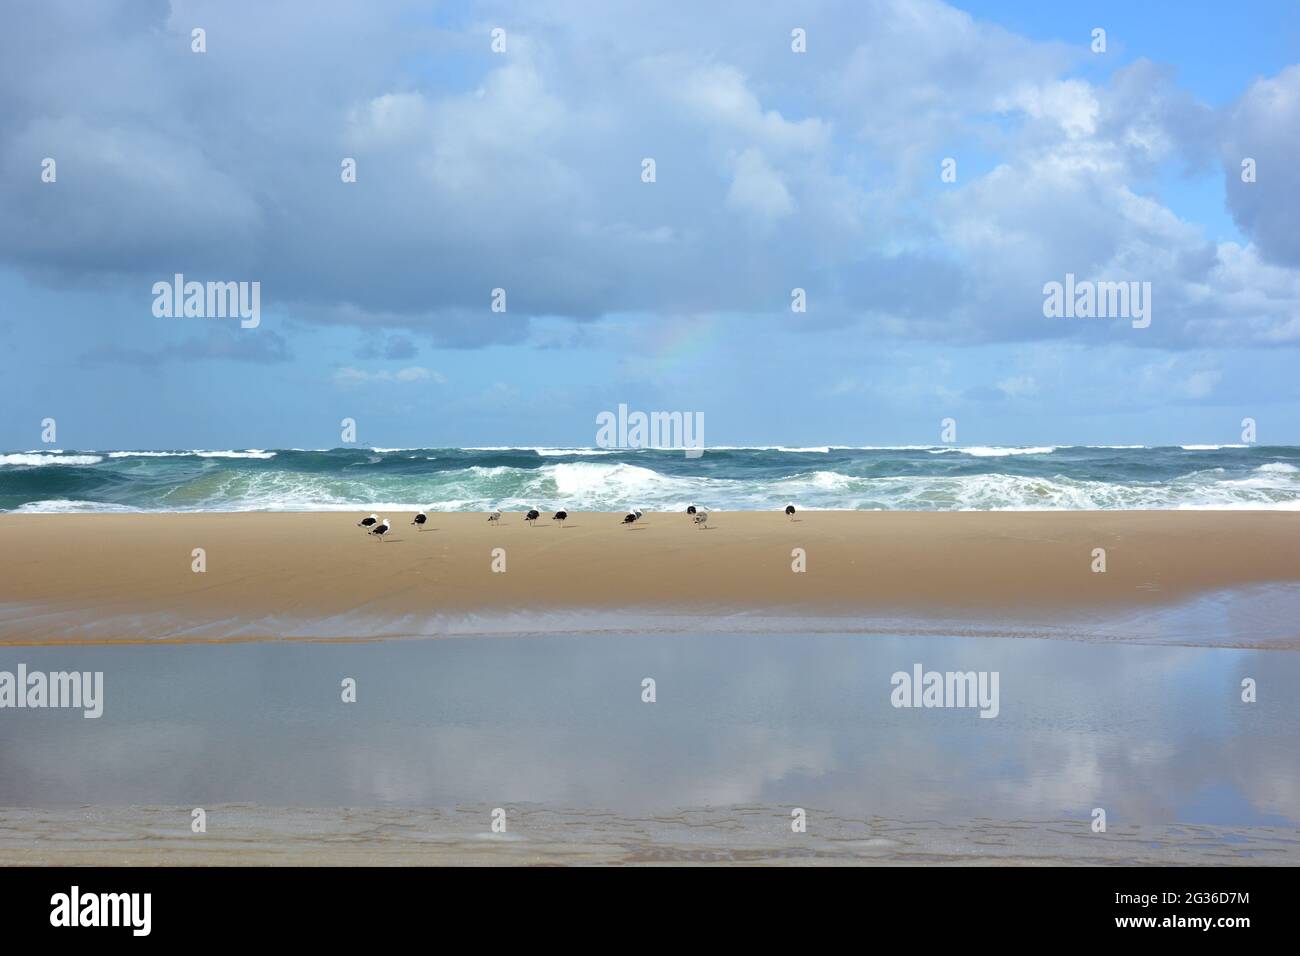 Francia, Aquitania, spiaggia atlantica, la marea in aumento coprirà gradualy la barra di sabbia per formare una corrente nella depressione in primo piano. Foto Stock